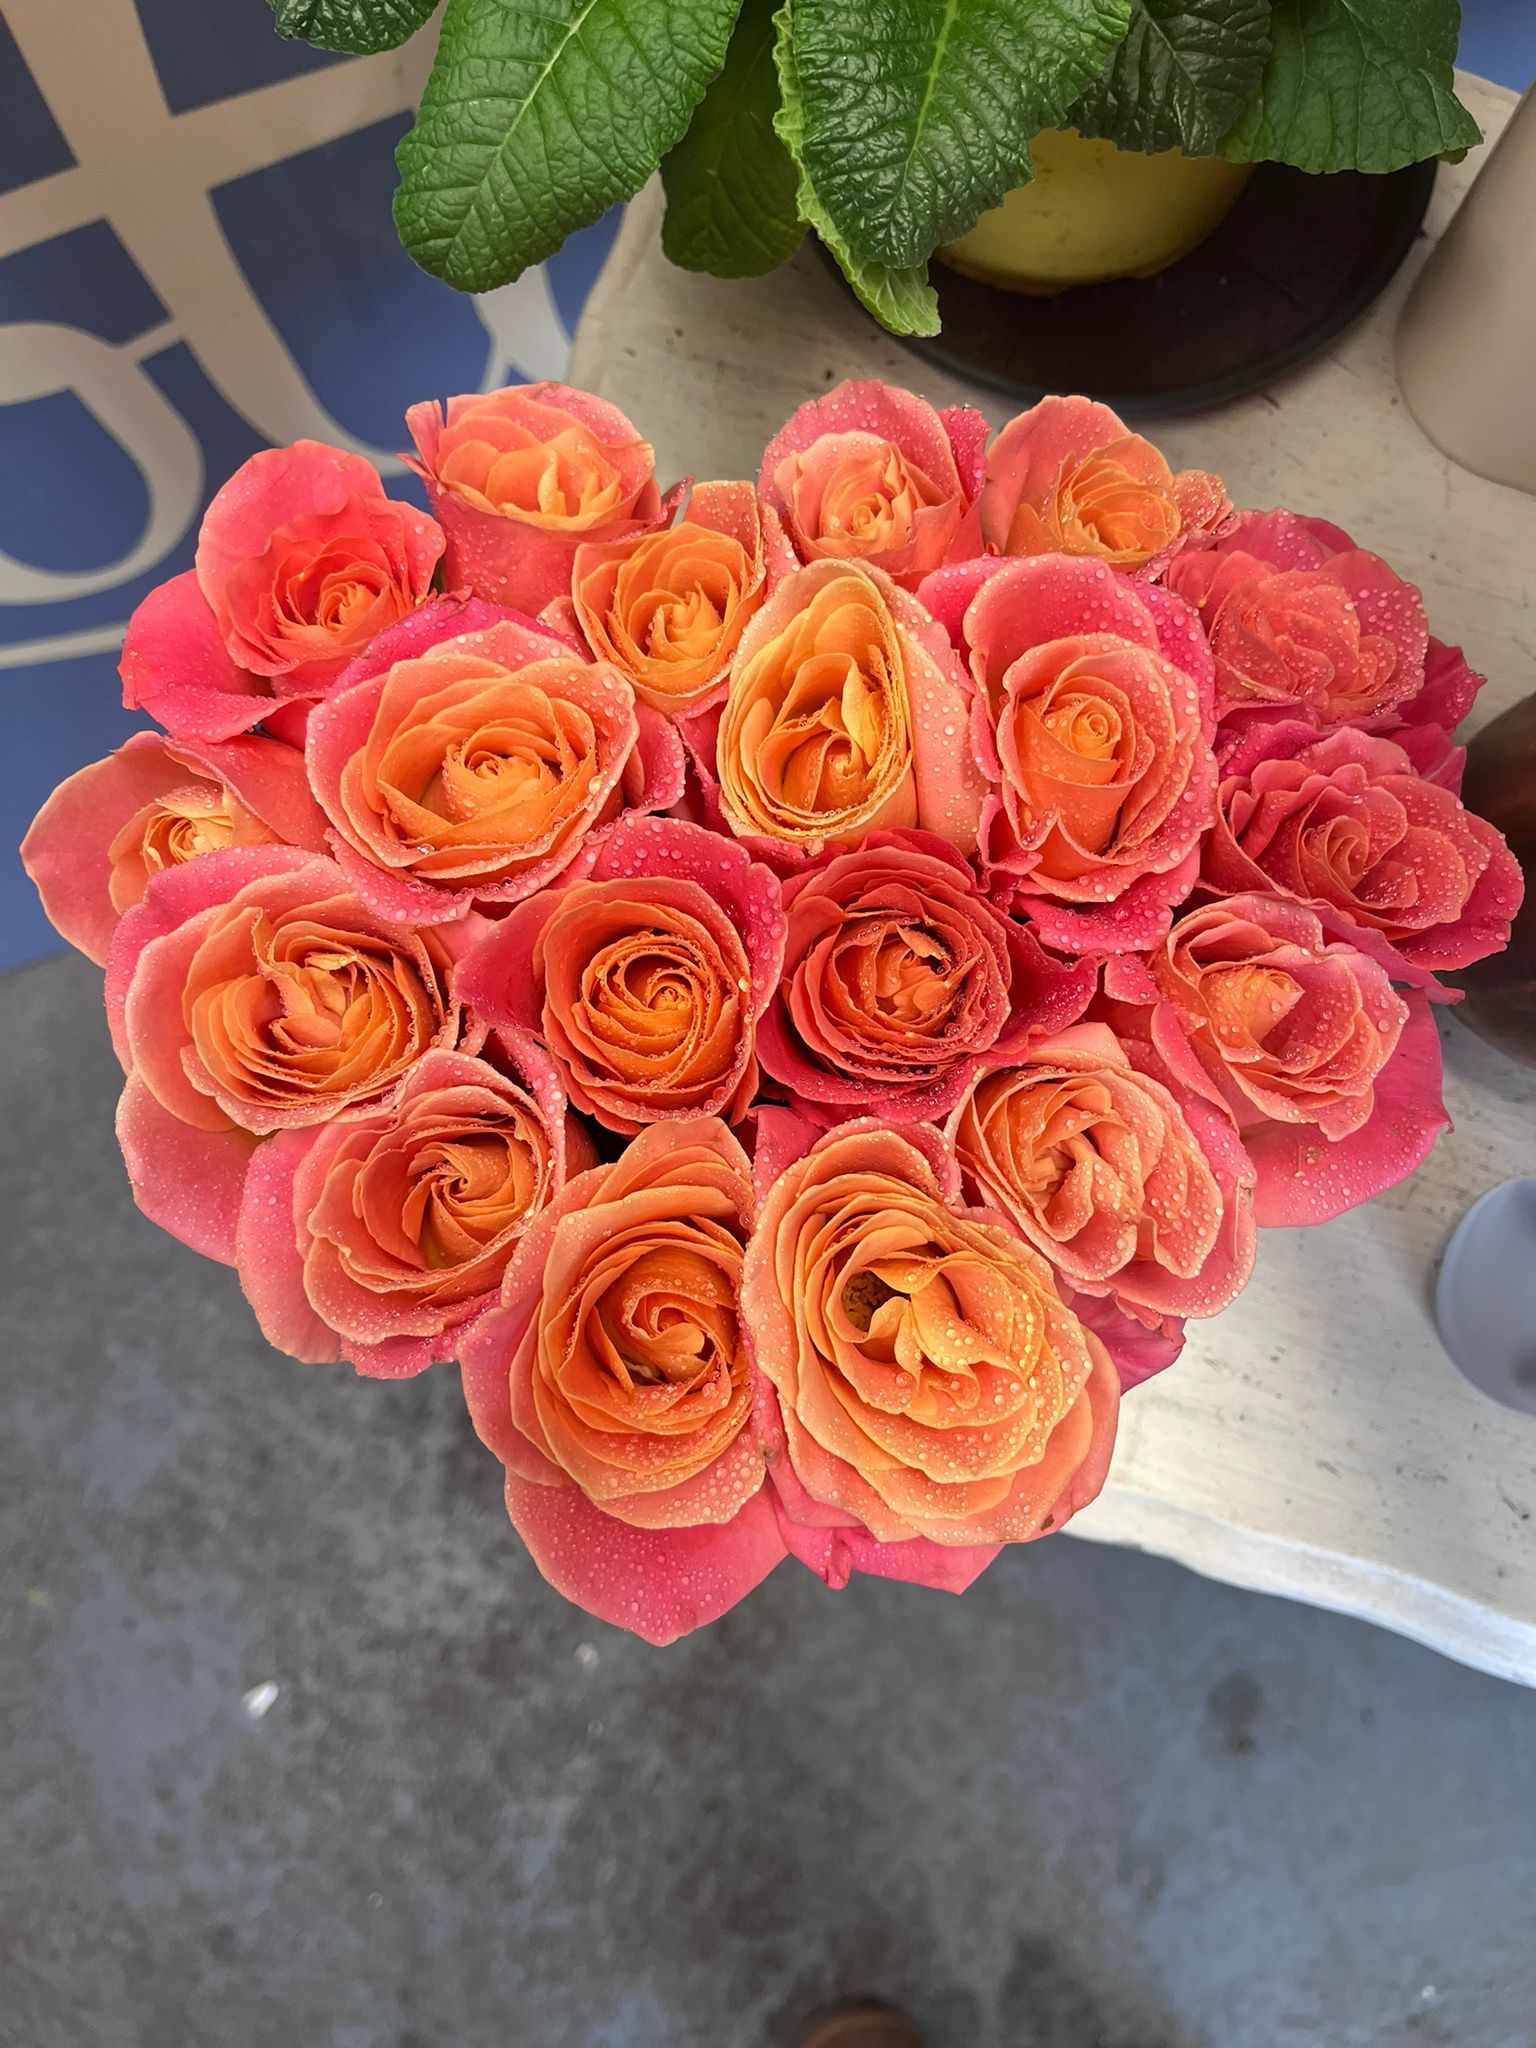 The Ravishing Rose Hatbox